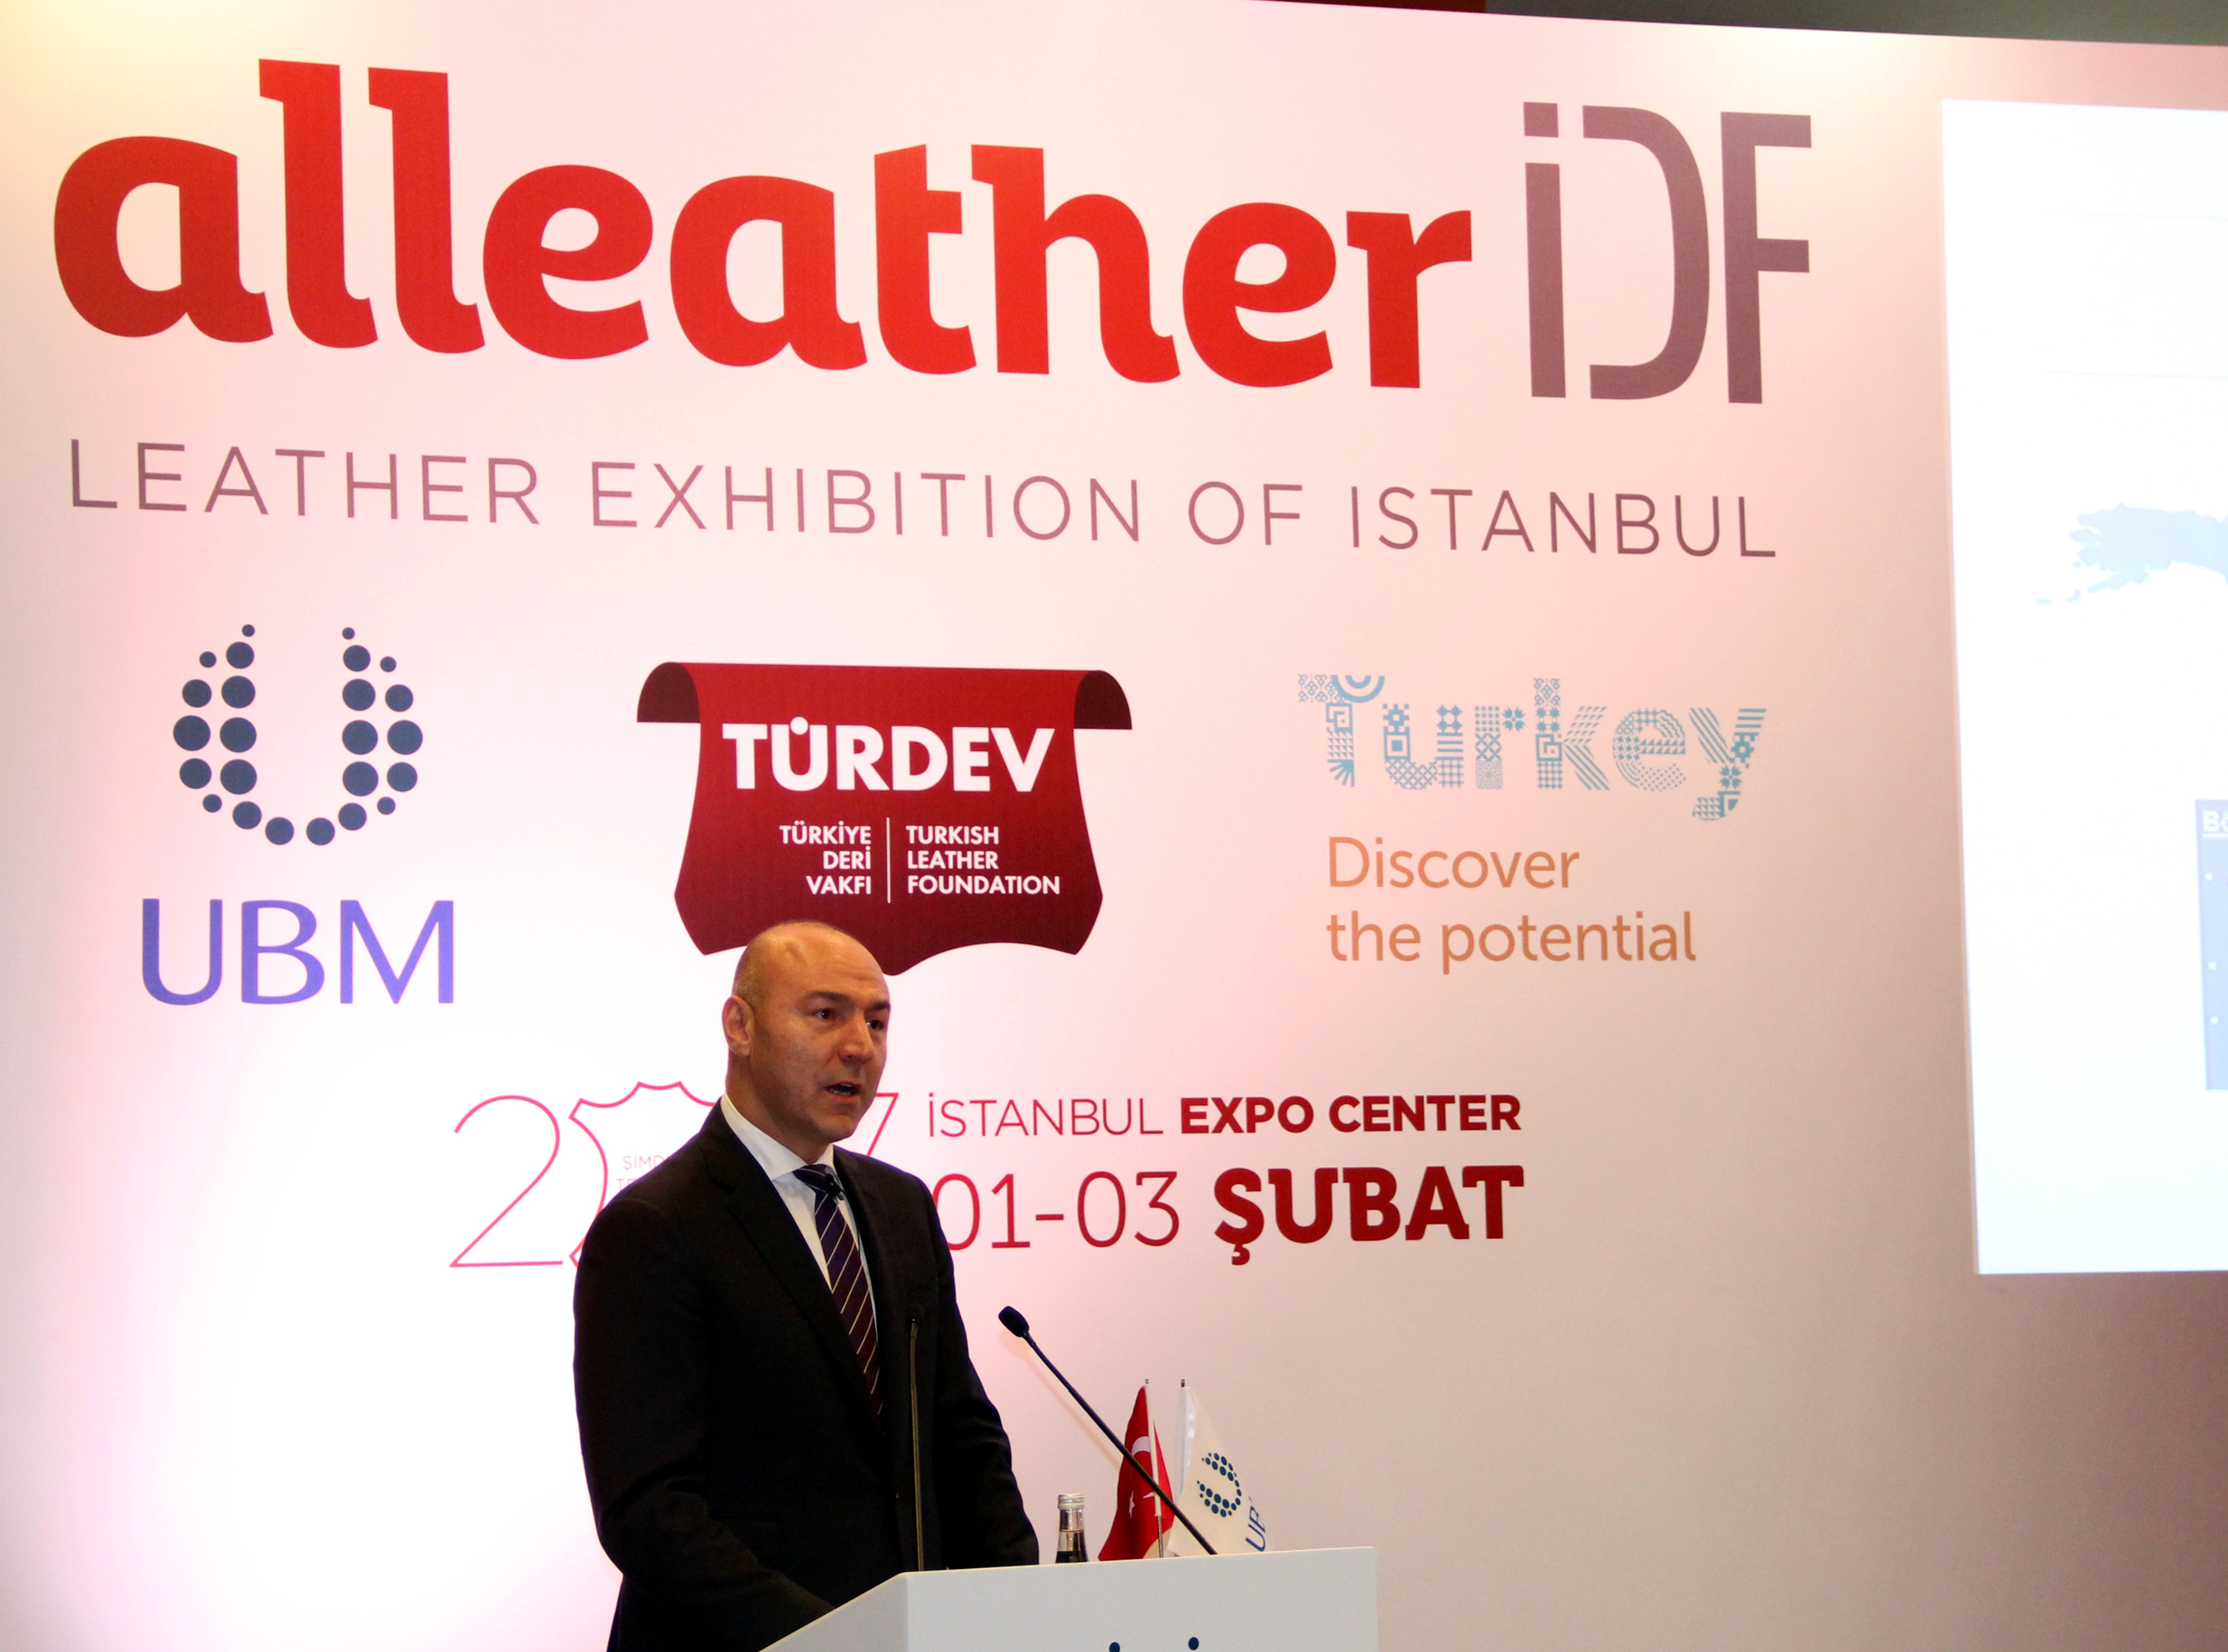 Türk deri sektörü, Alleather-IDF ile dünya pazarlarına açılacak-1343